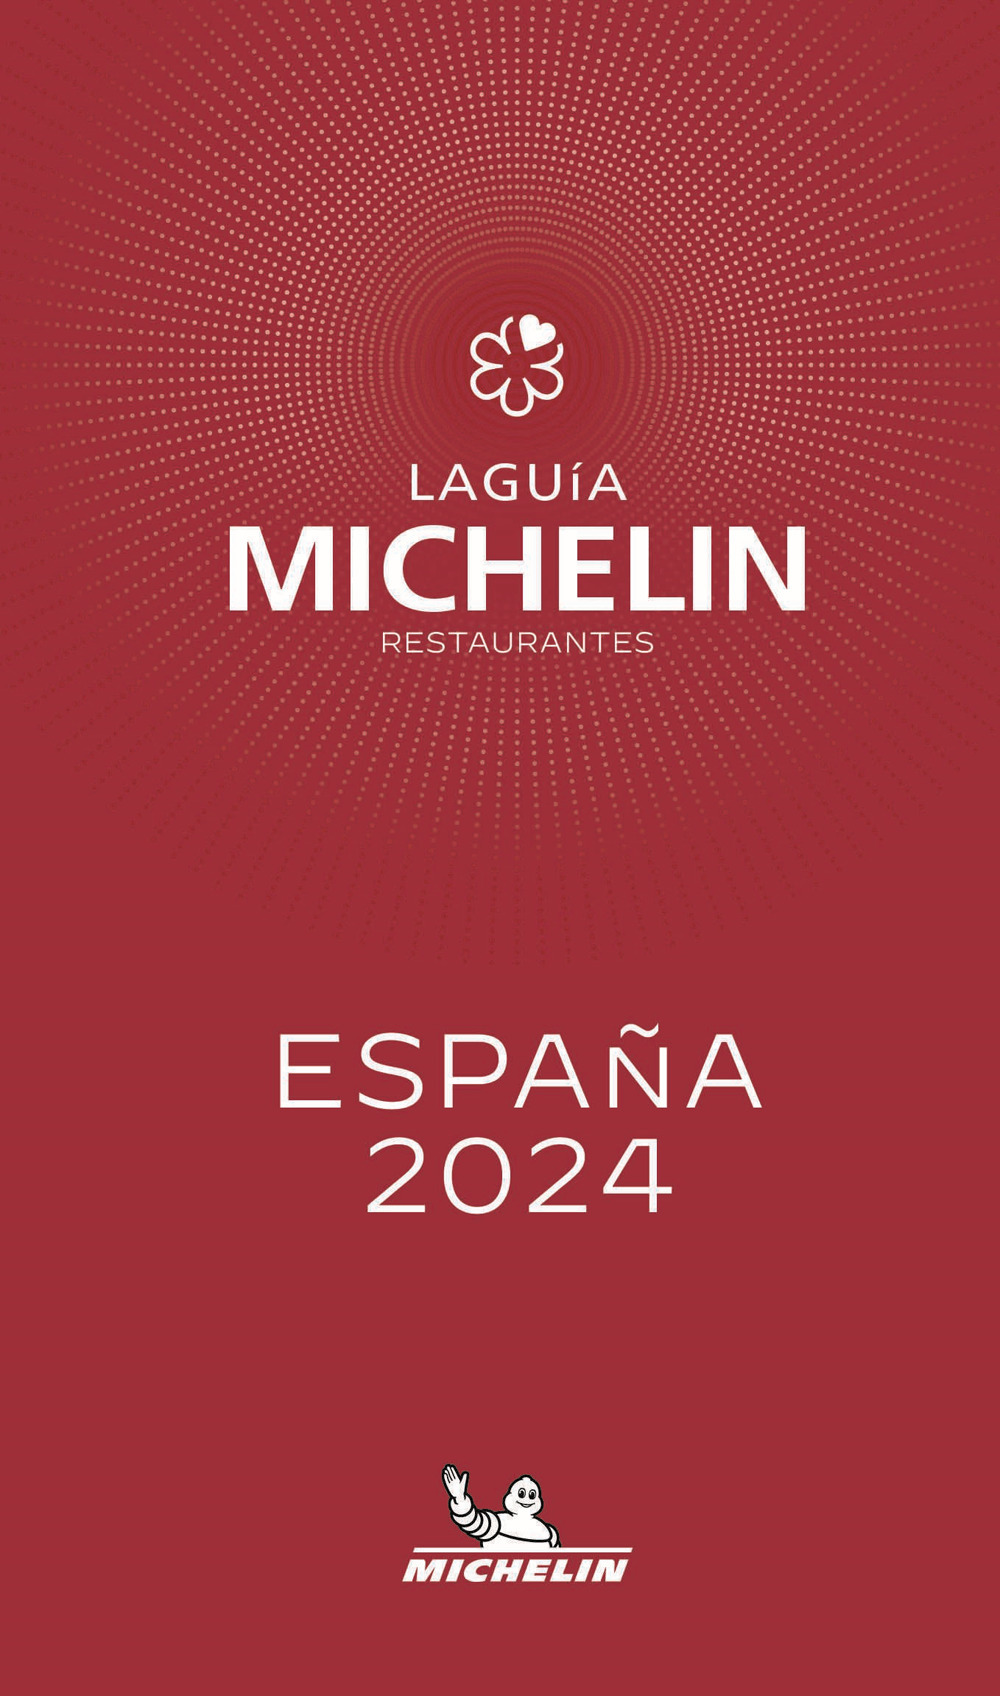 La guía Michelin restaurantes. España selección 2024